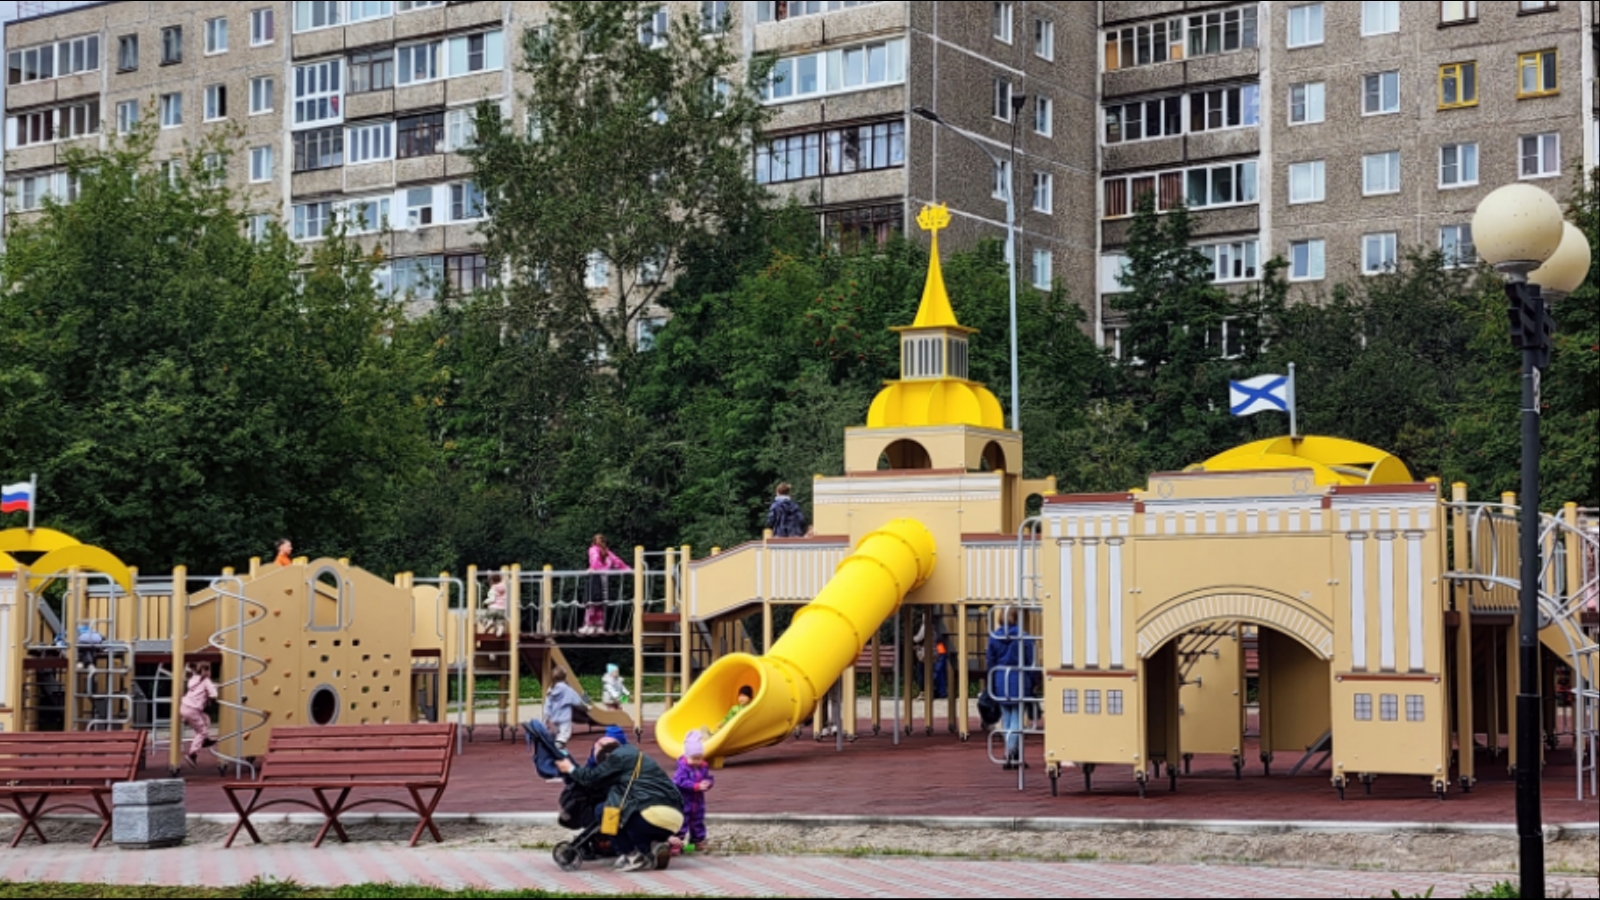 Сердечкин обещал доделать 30 детских площадок в Мурманске к маю